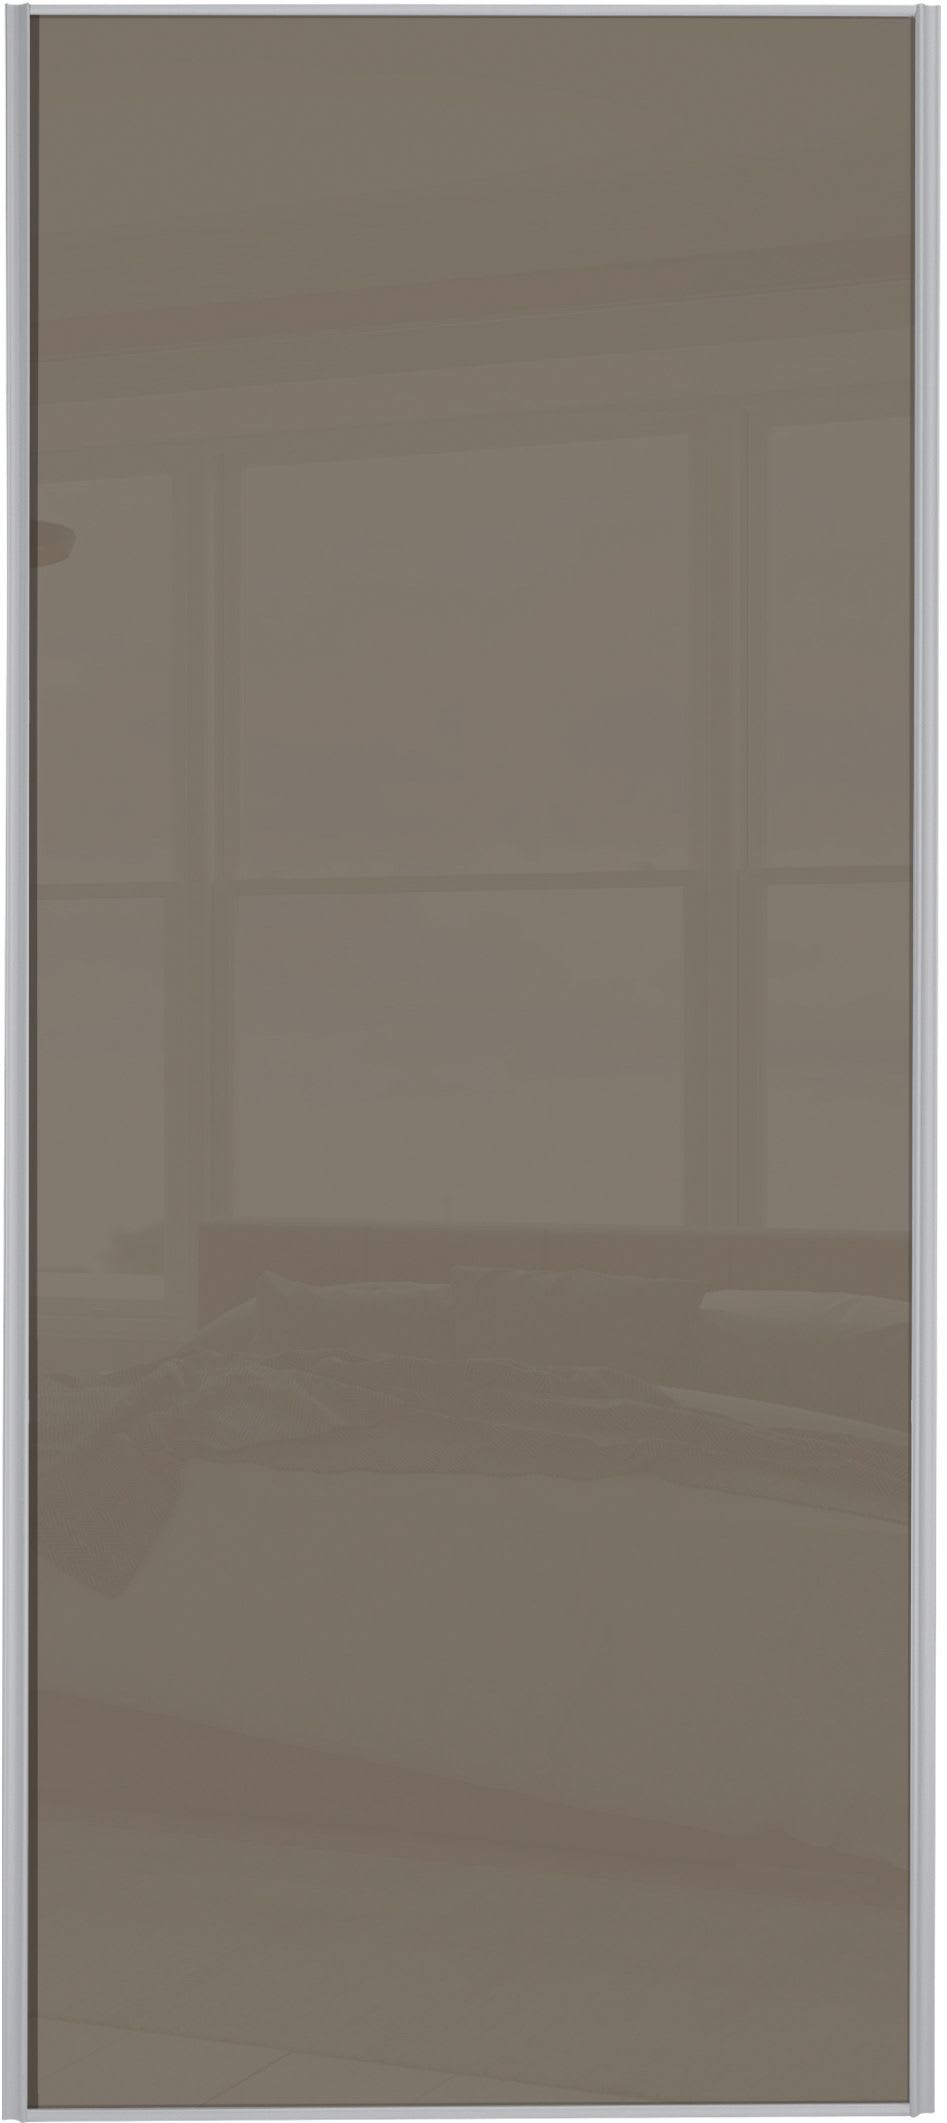 Spacepro Sliding Wardrobe Door Silver Framed Single Panel